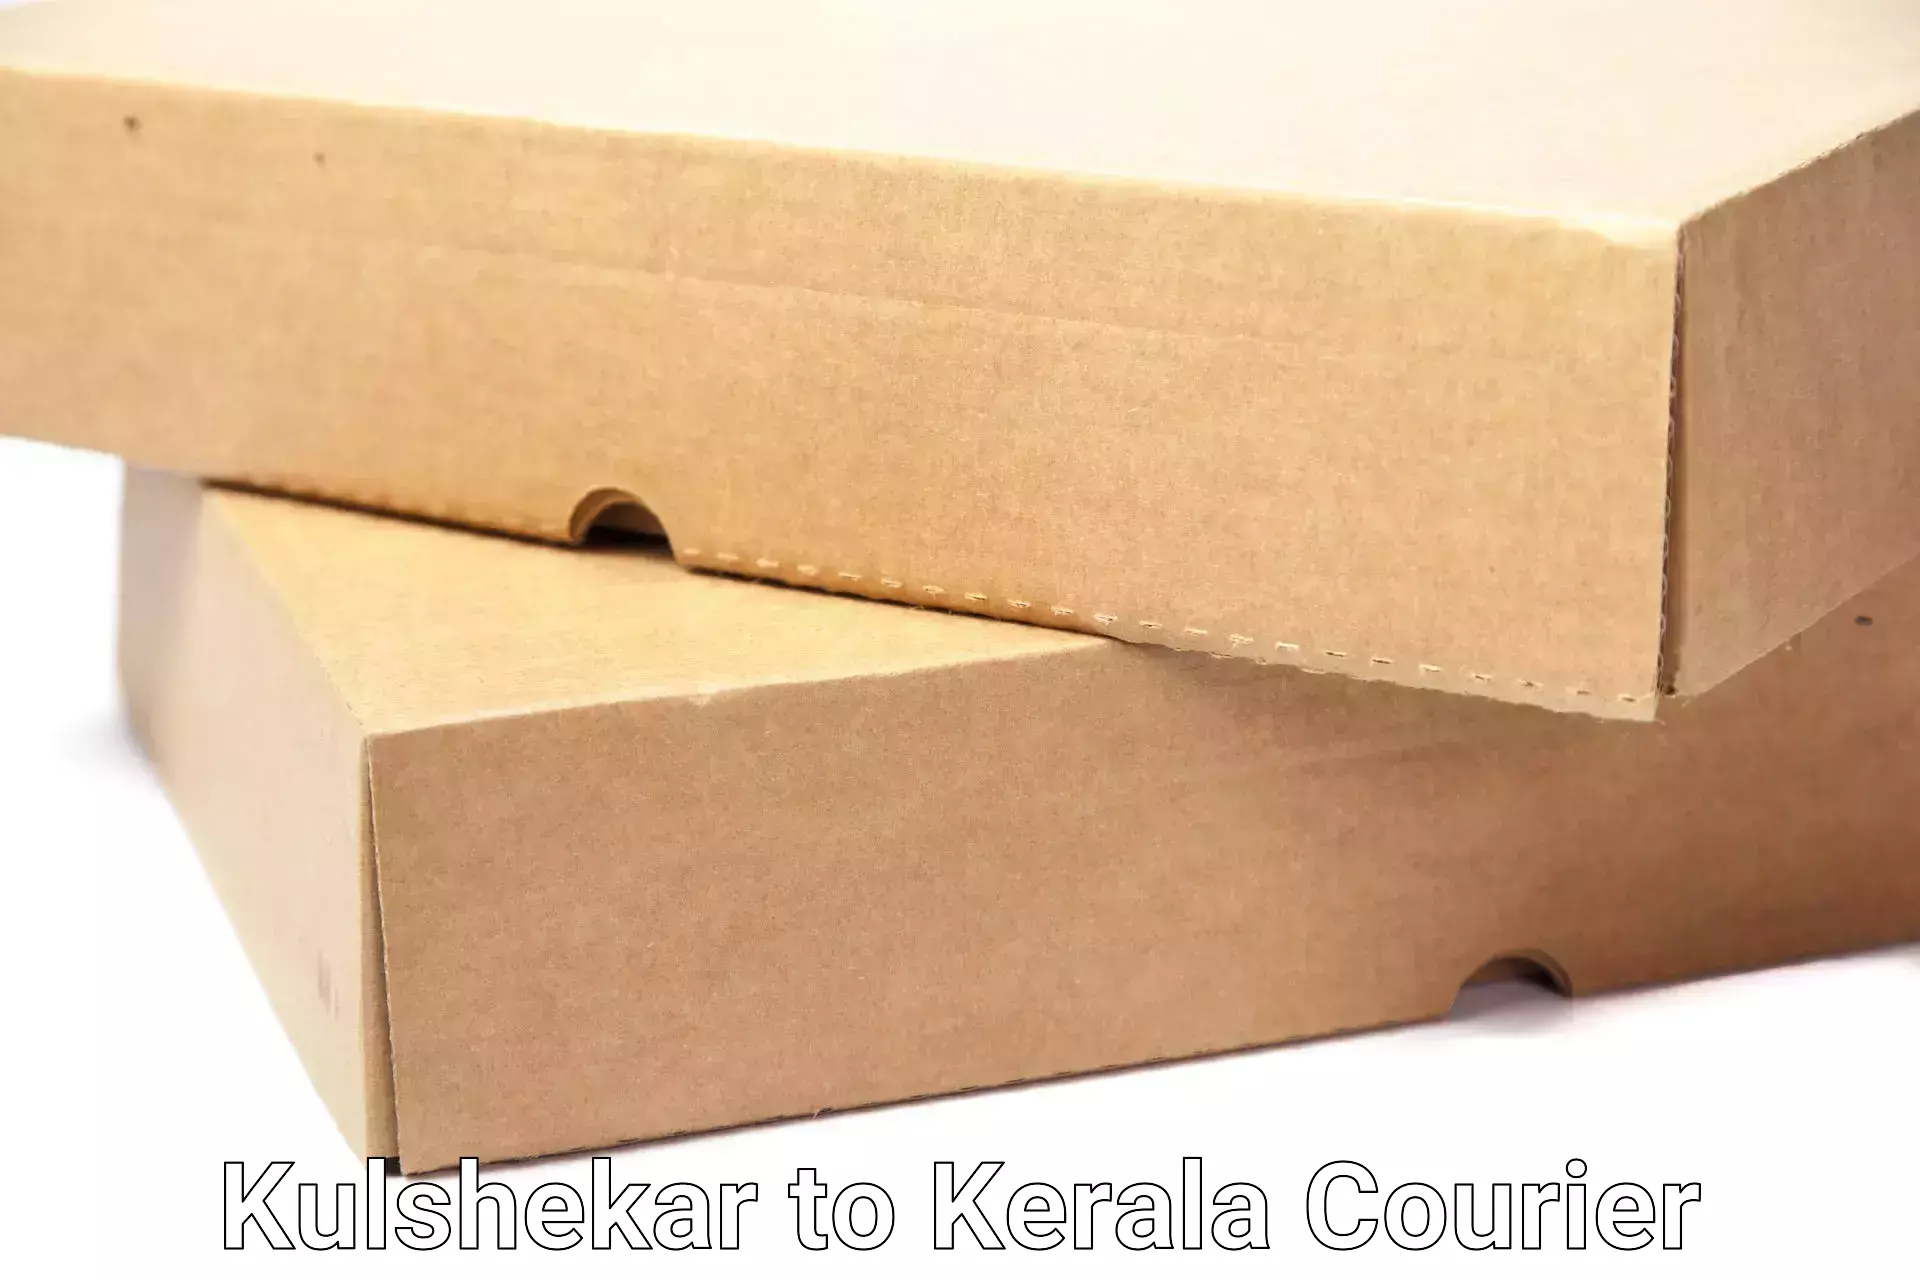 Household moving experts Kulshekar to Pathanamthitta